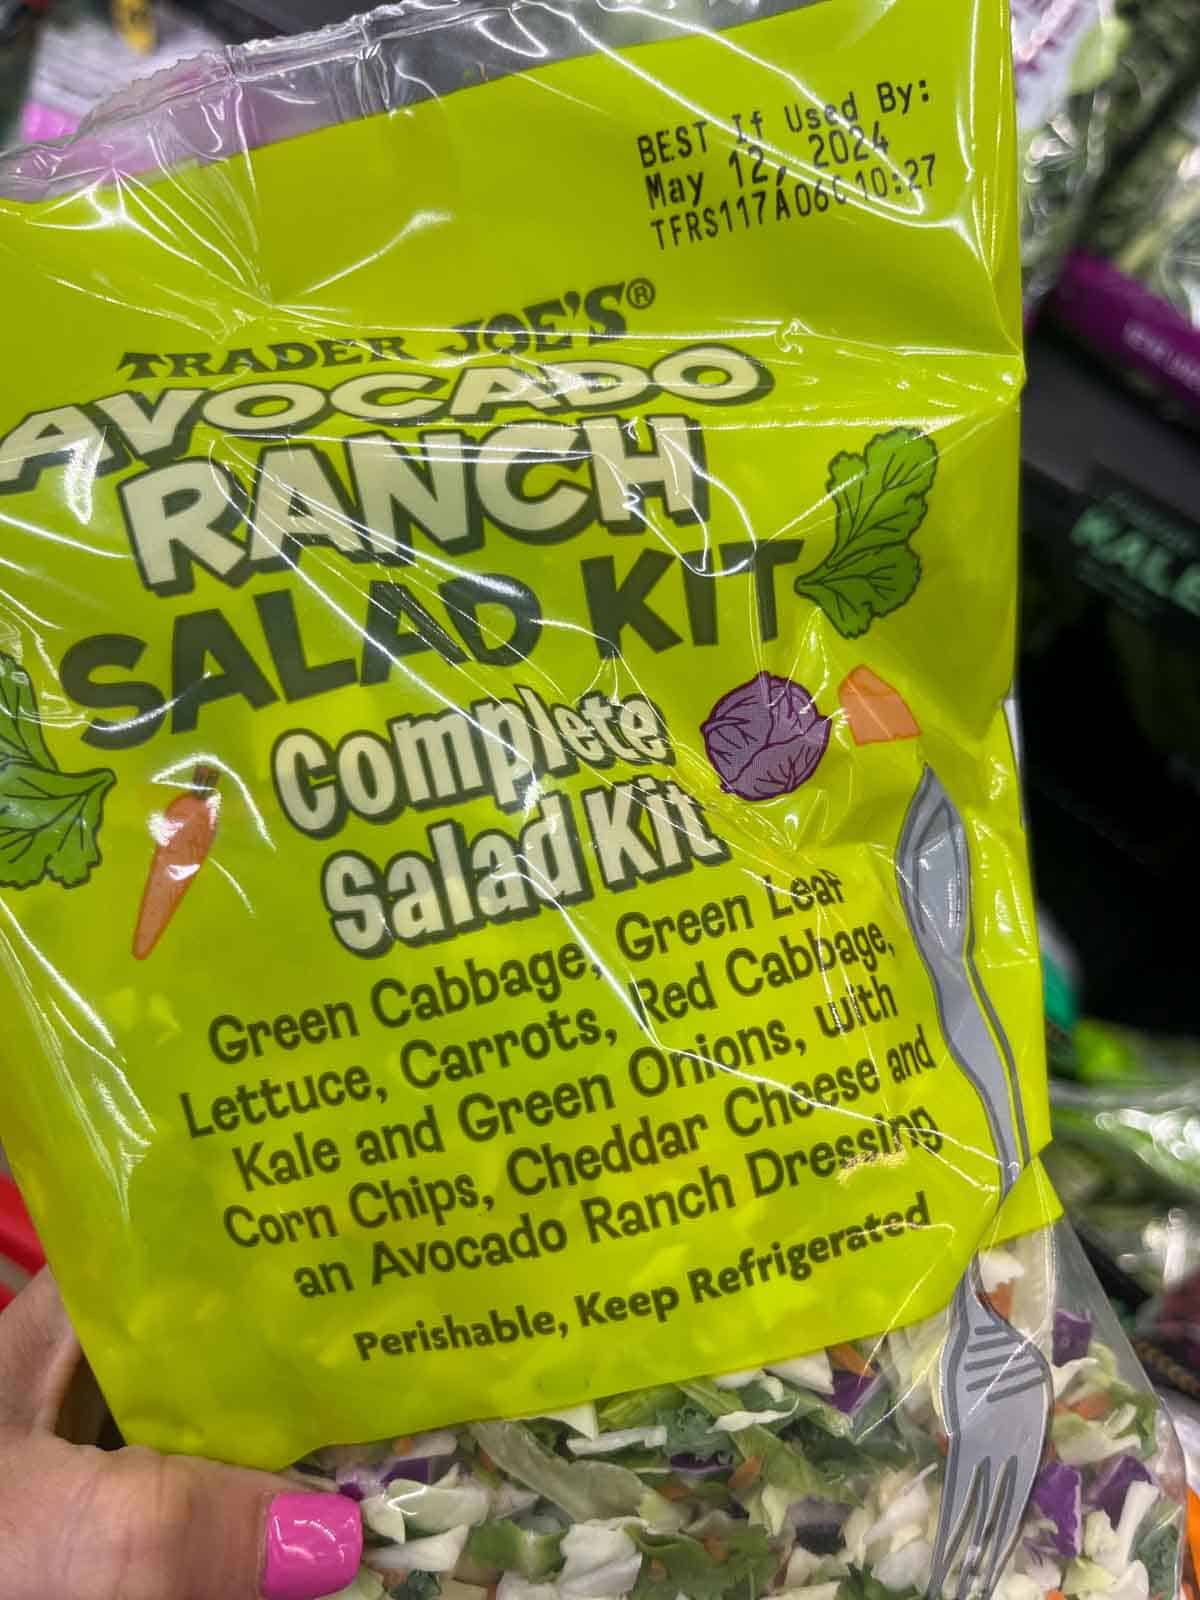 Trader Joe's Avocado Ranch salad kit.